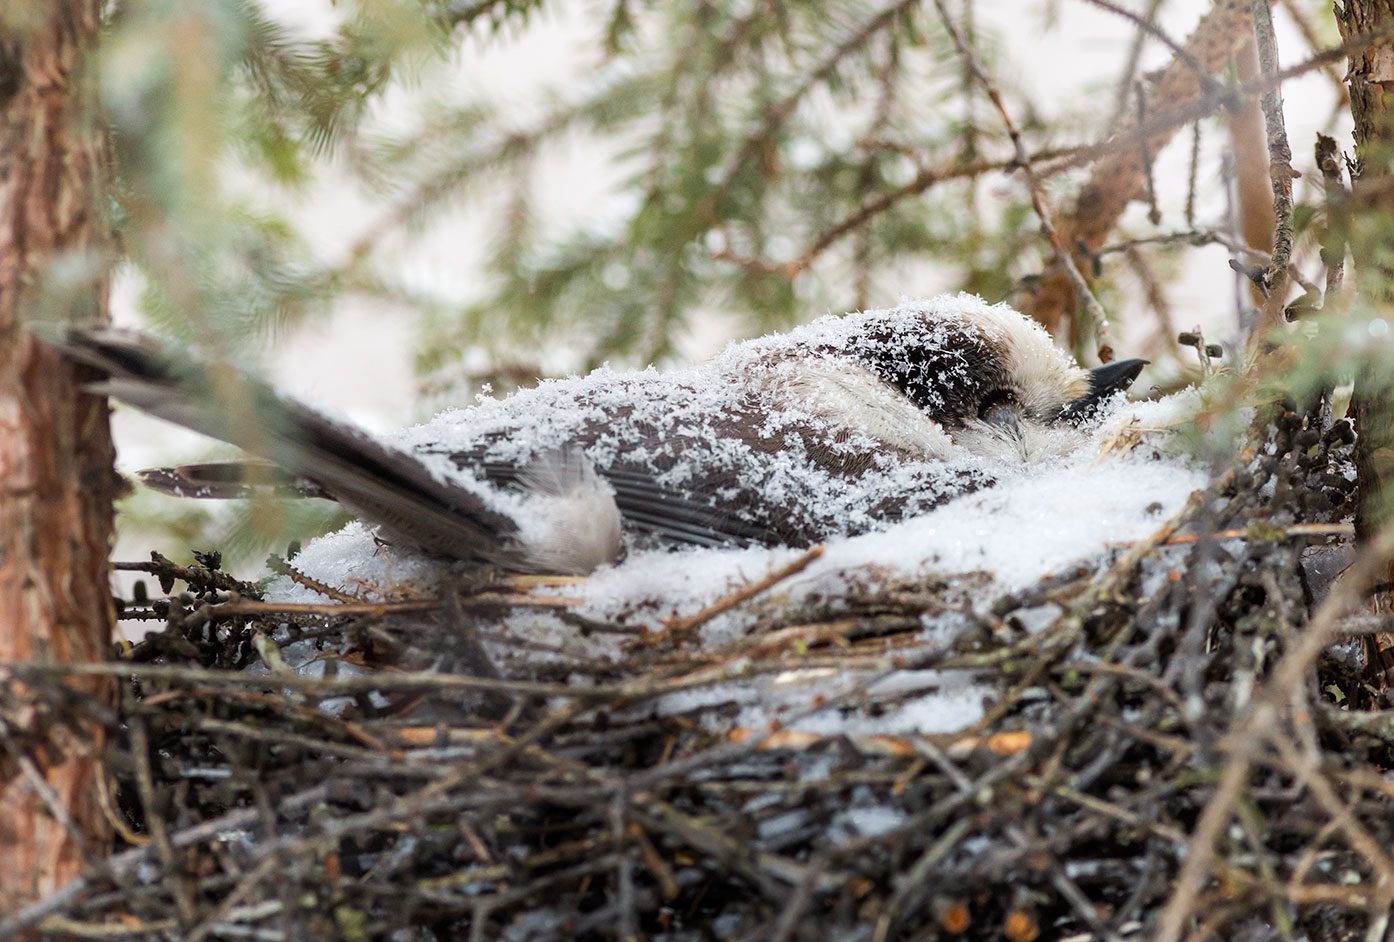 Snow Gray Jay nest. Brett Forsyth.